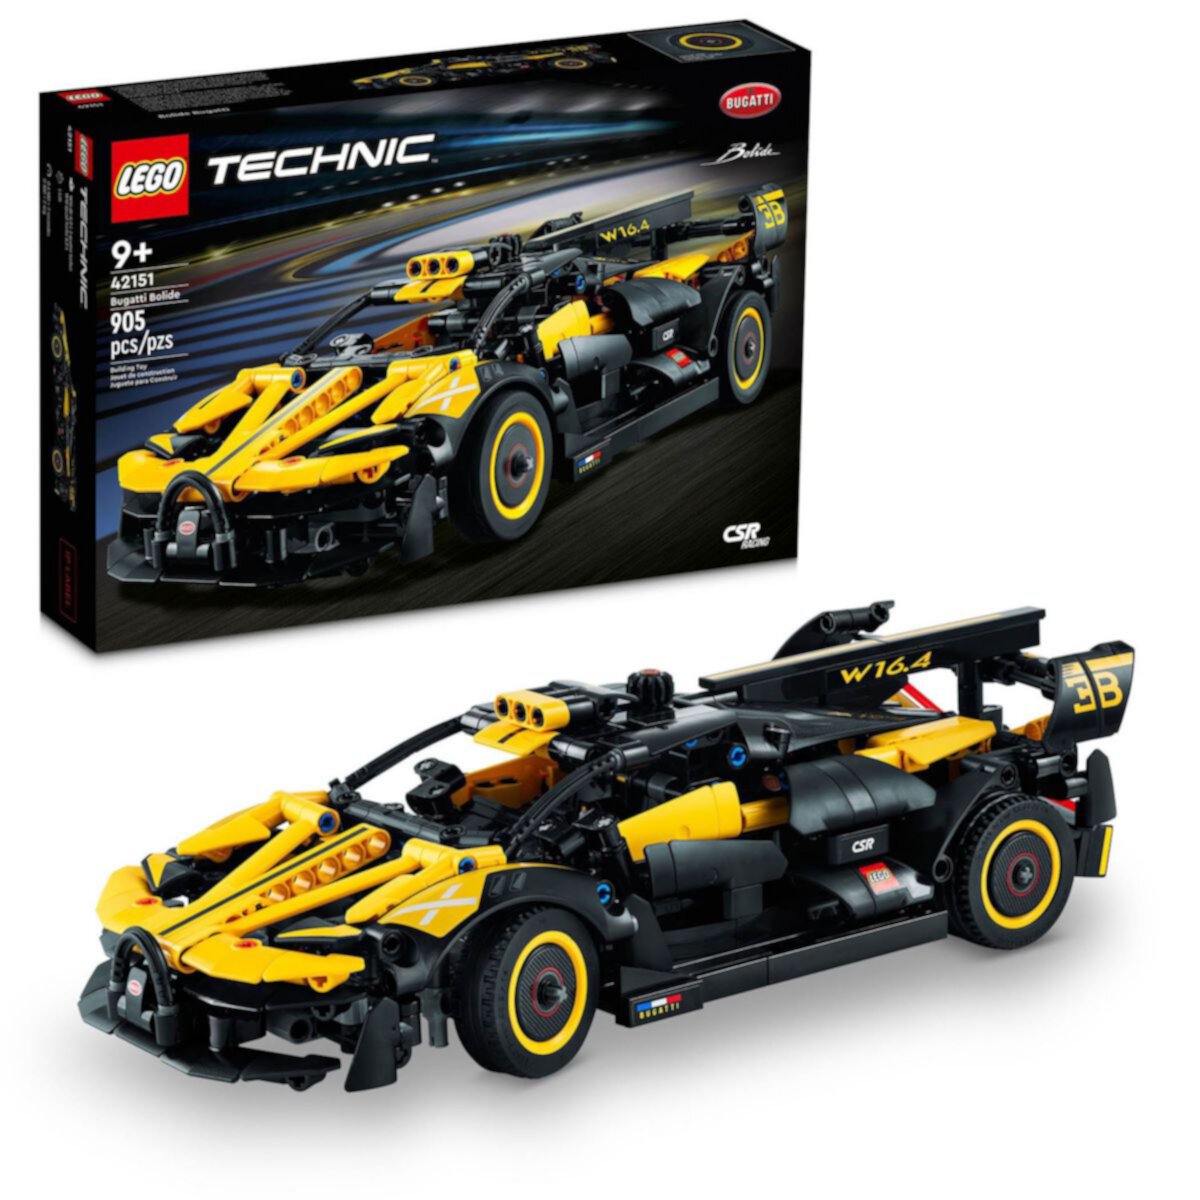 LEGO Technic Bugatti Bolide 42151 Конструктор Lego